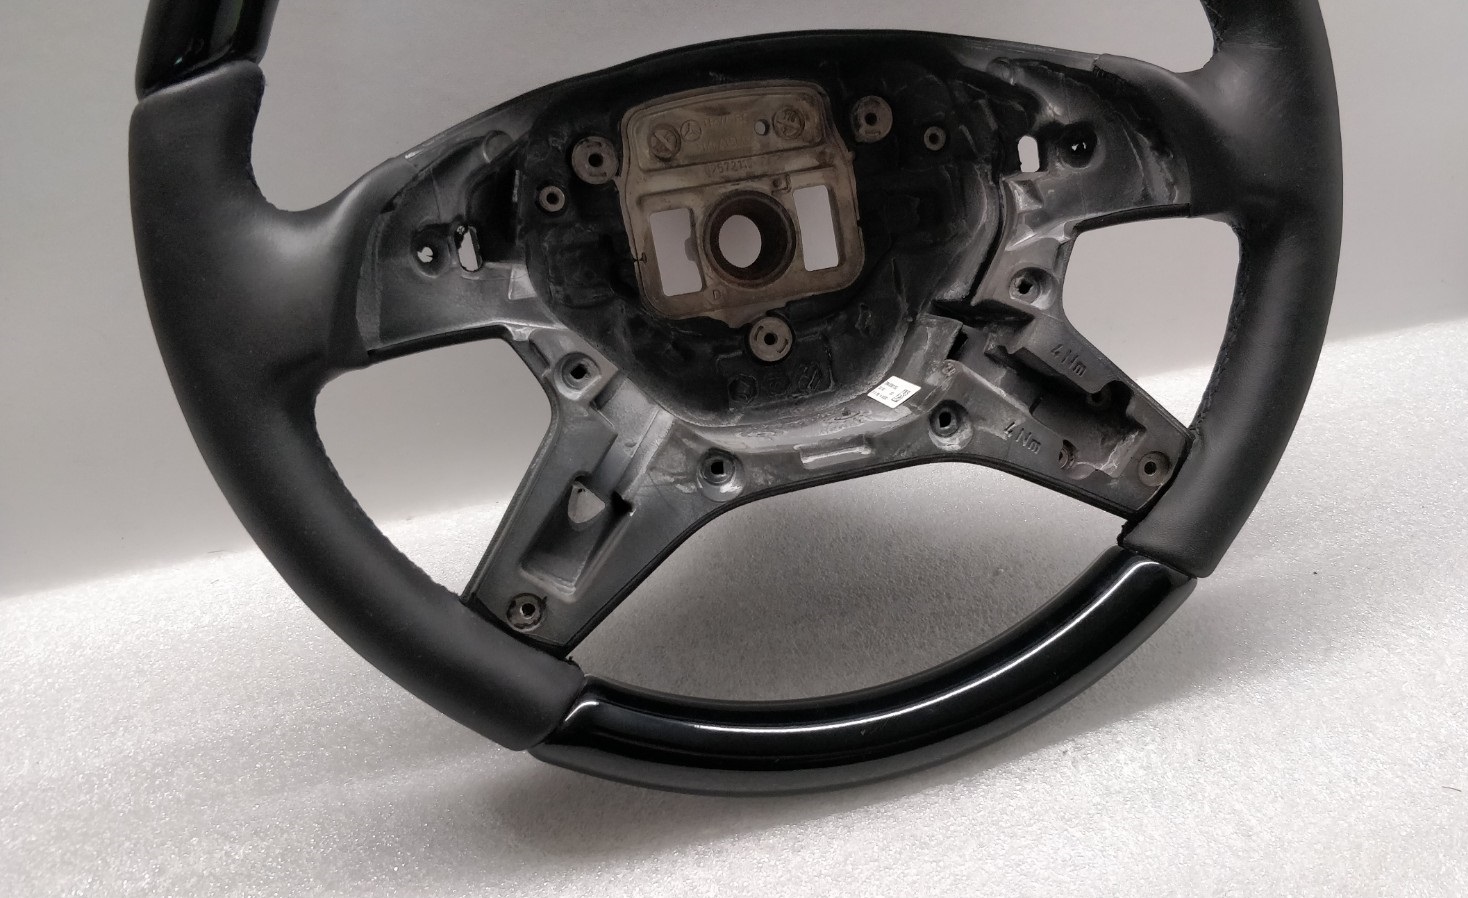 Mercedes steering wheel Black Gloss wood + leather W166 X166 GL GLE ML 1664601703 New